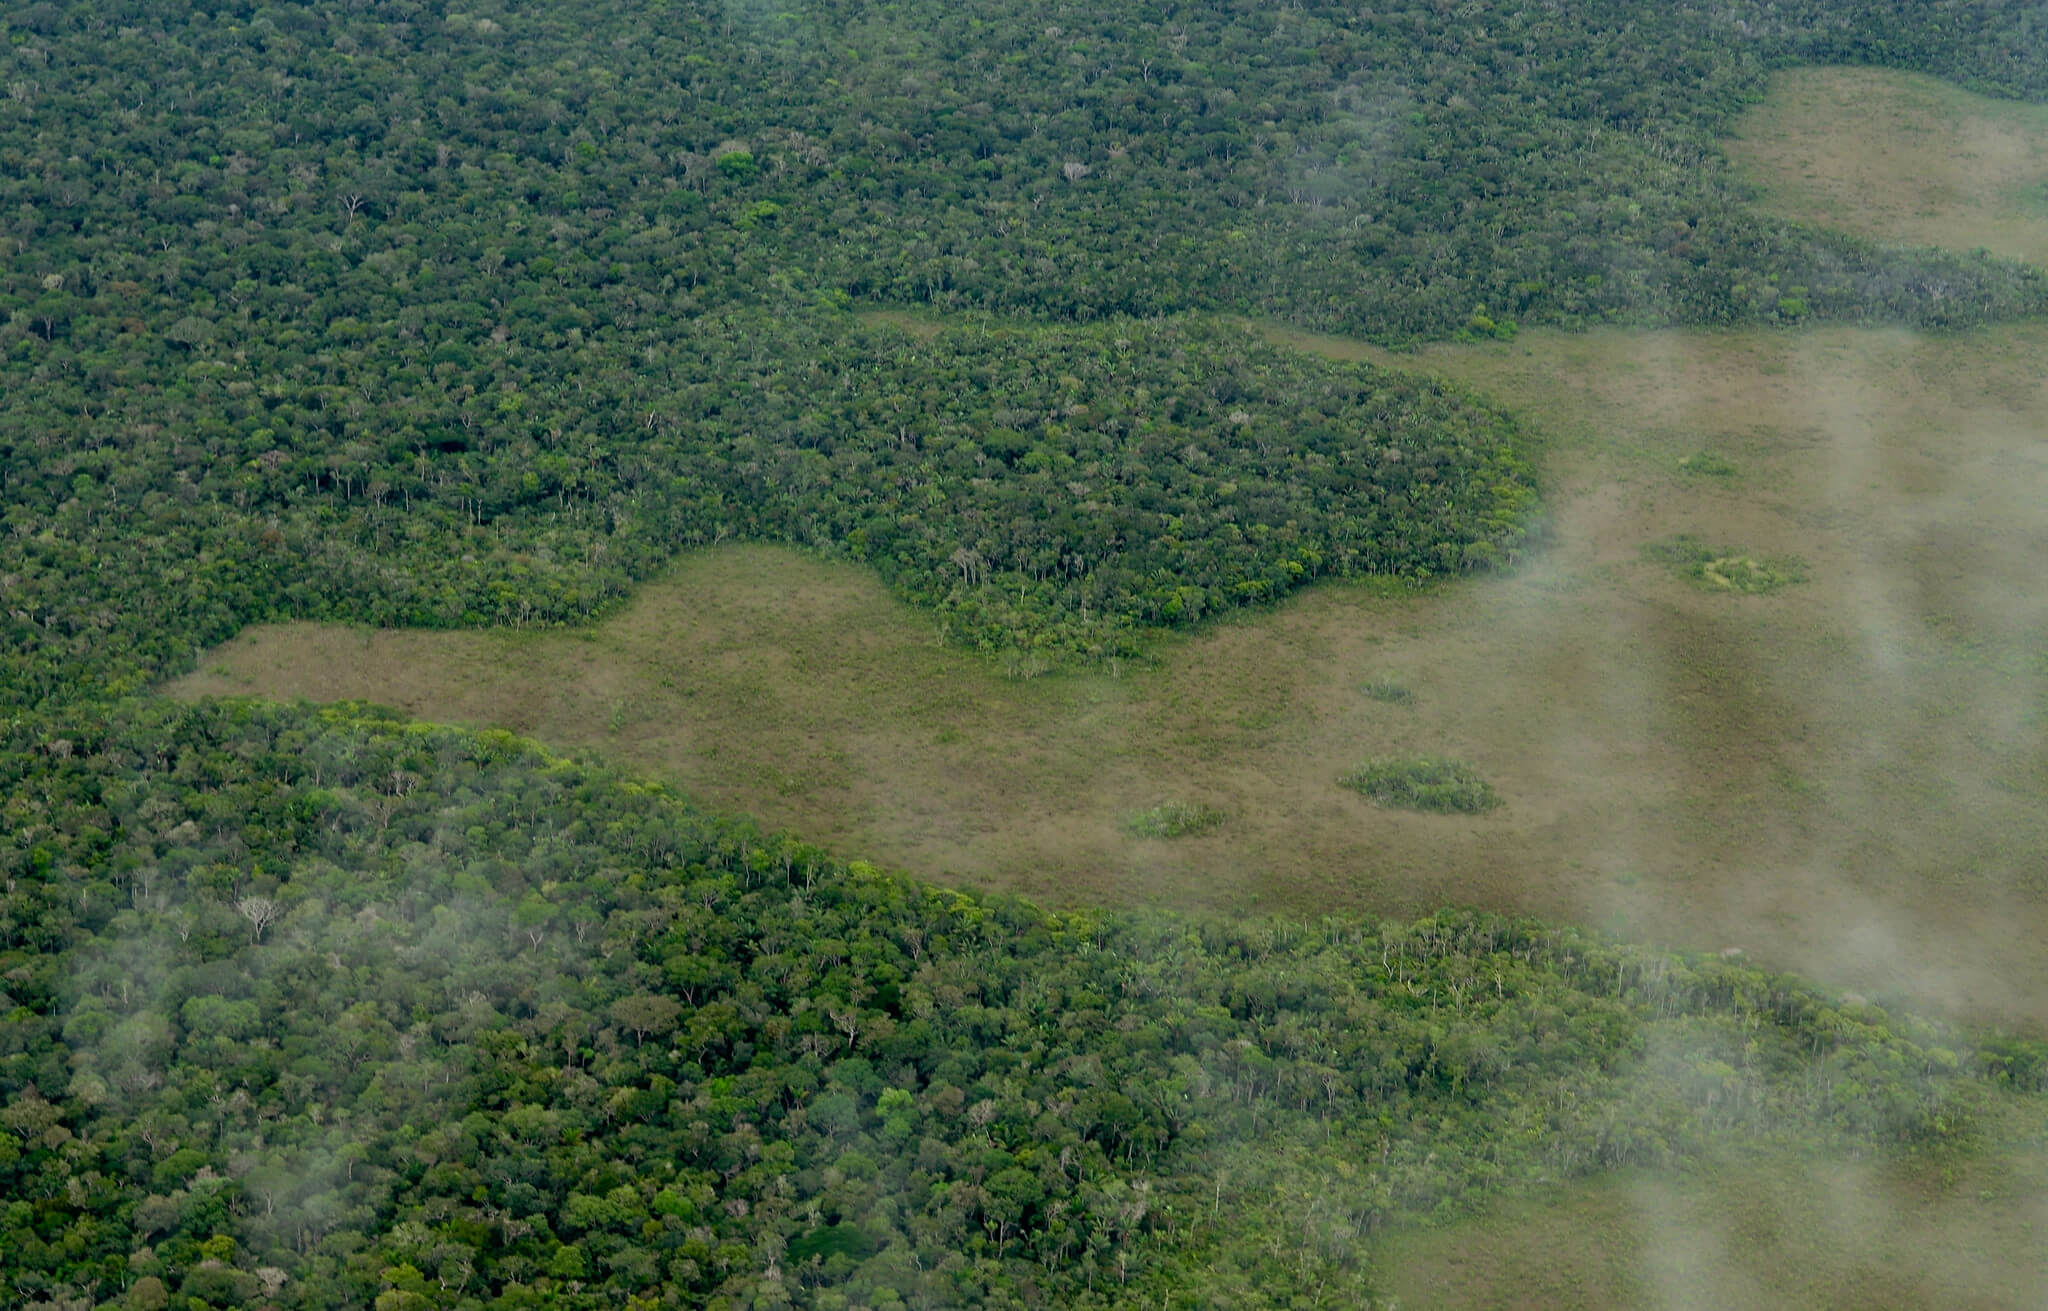 h1Cambio de uso de suelo forestal y su impacto en el medio ambienteh1